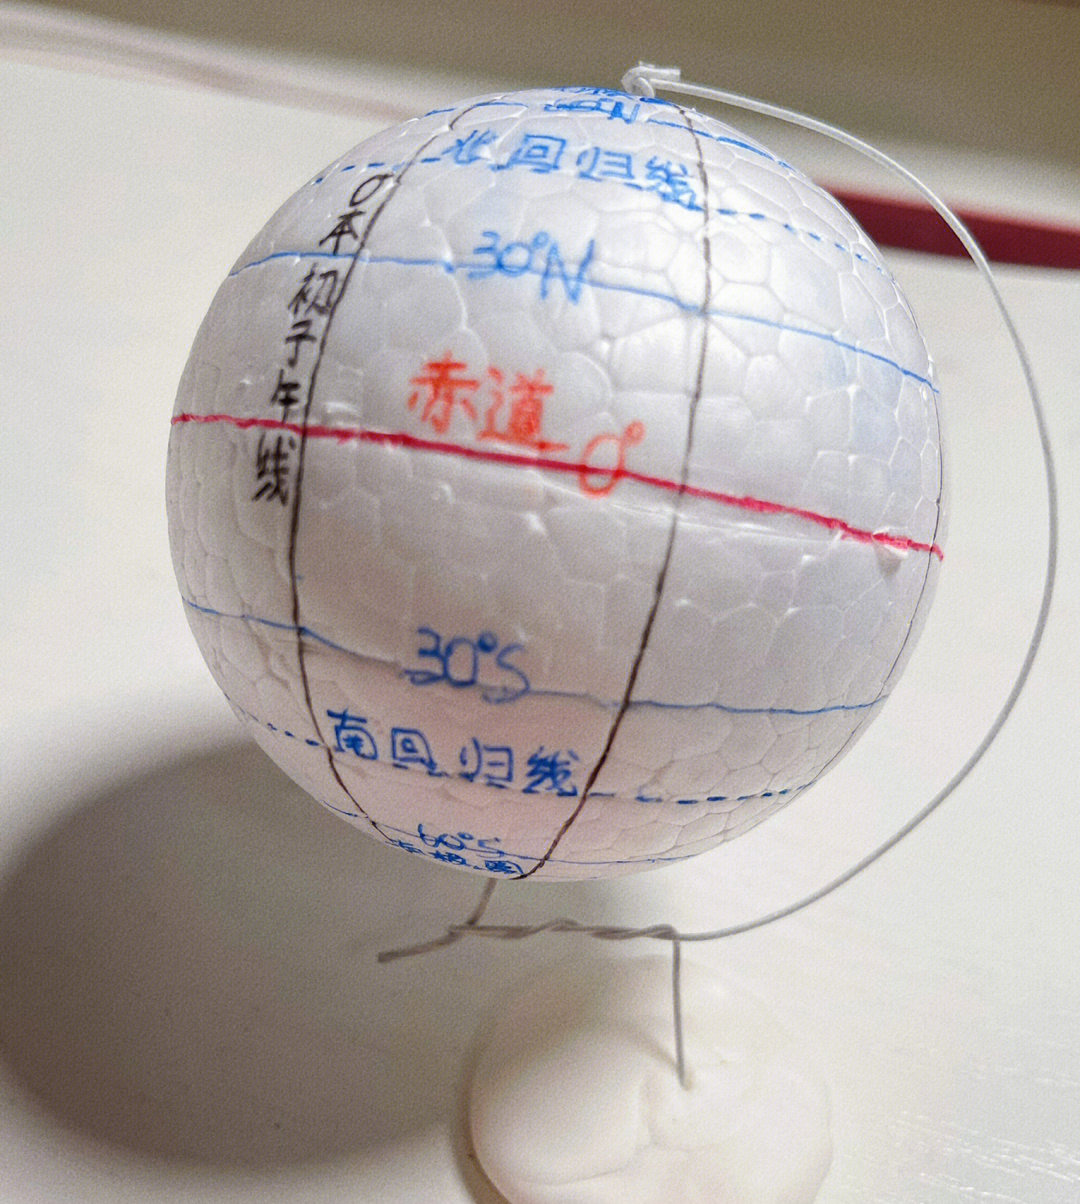 地球仪模型制作橡皮泥图片